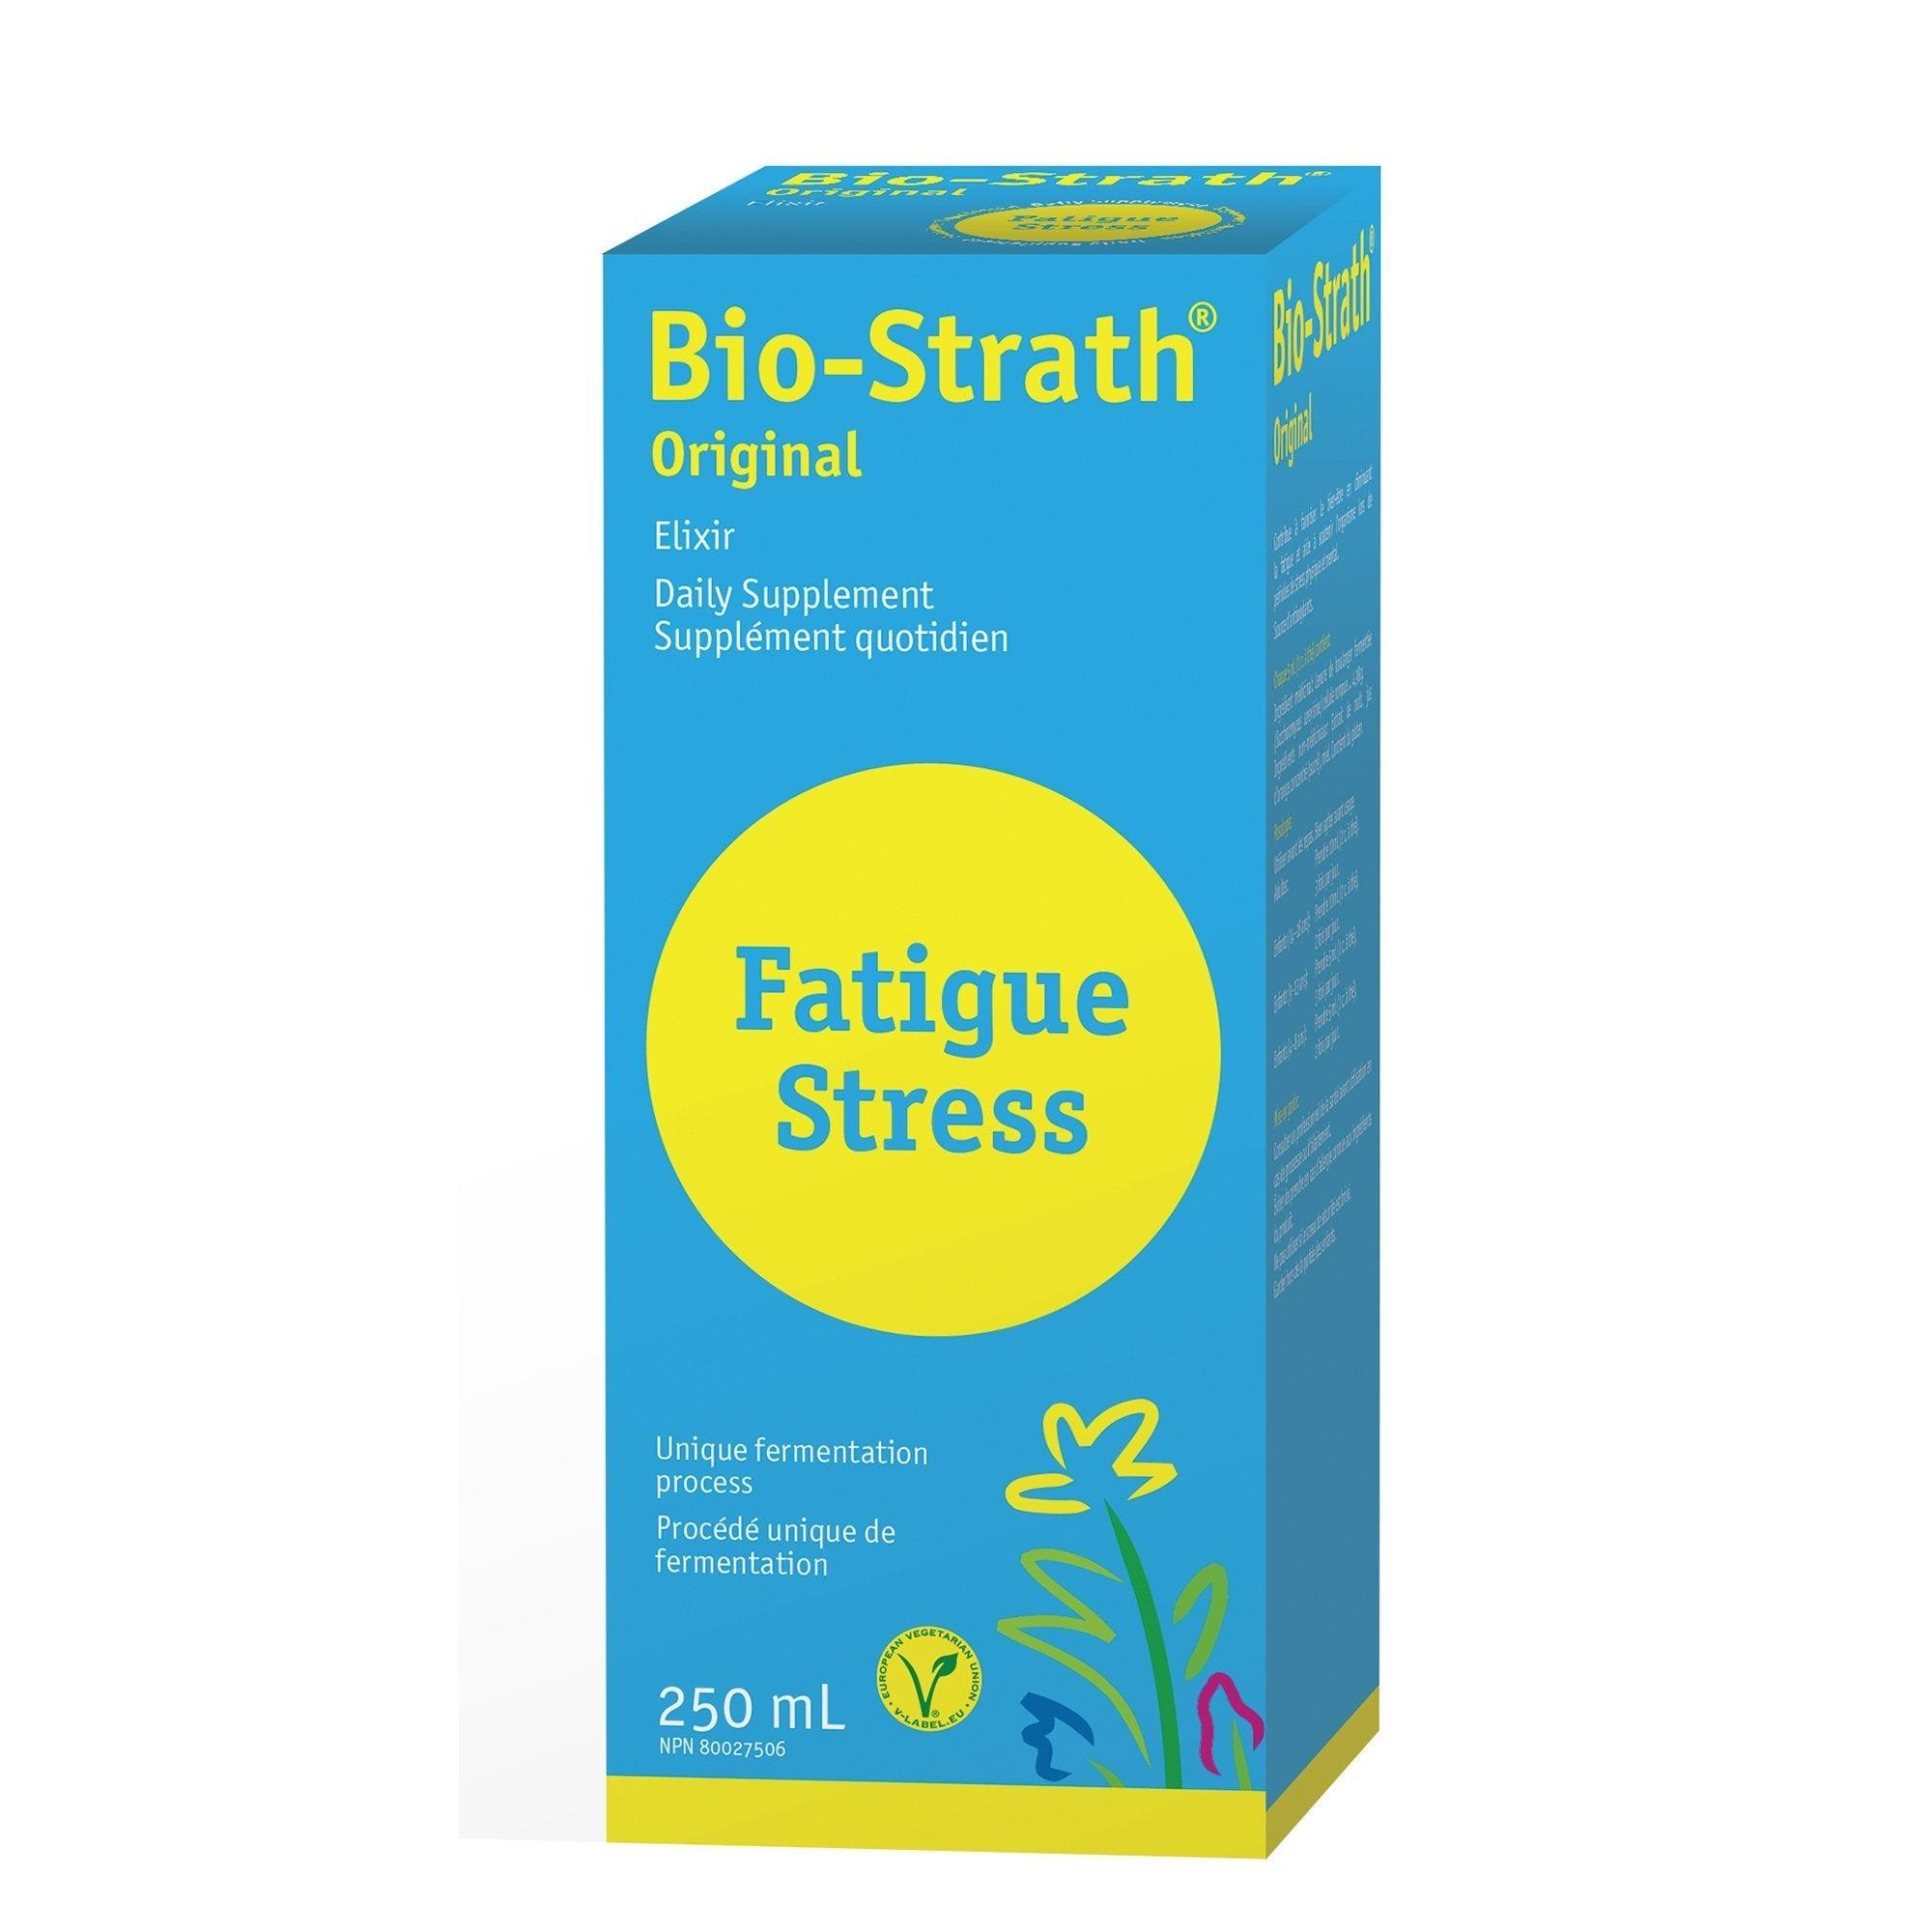 Bio-Strath Original Fatigue Stress 250ml Supplements - Stress at Village Vitamin Store